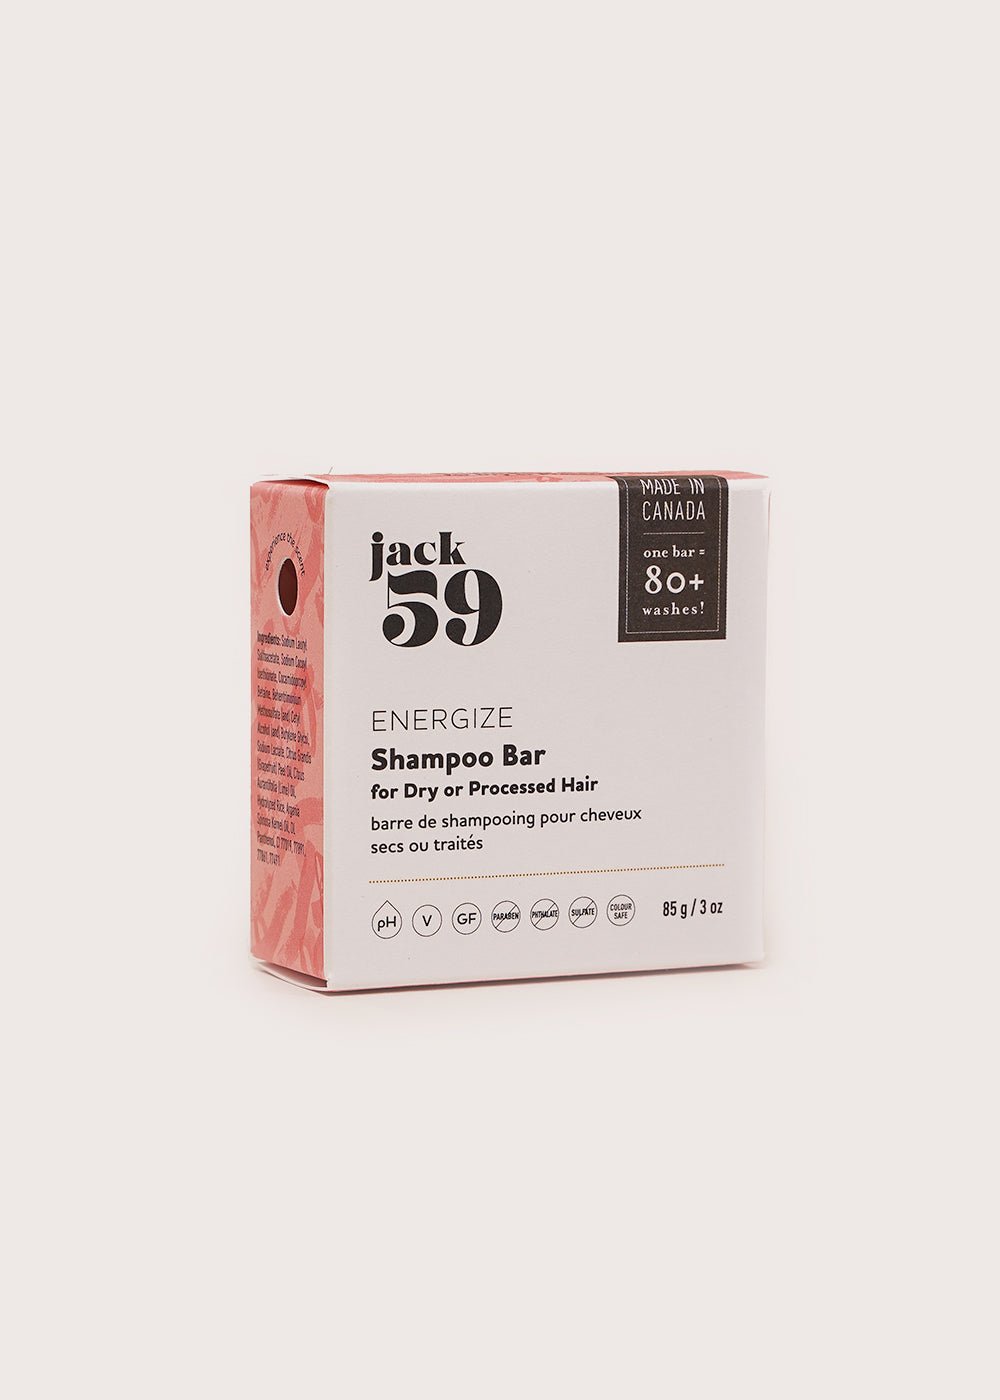 Jack59 Energize Shampoo Bar - New Classics Studios Sustainable Ethical Fashion Canada